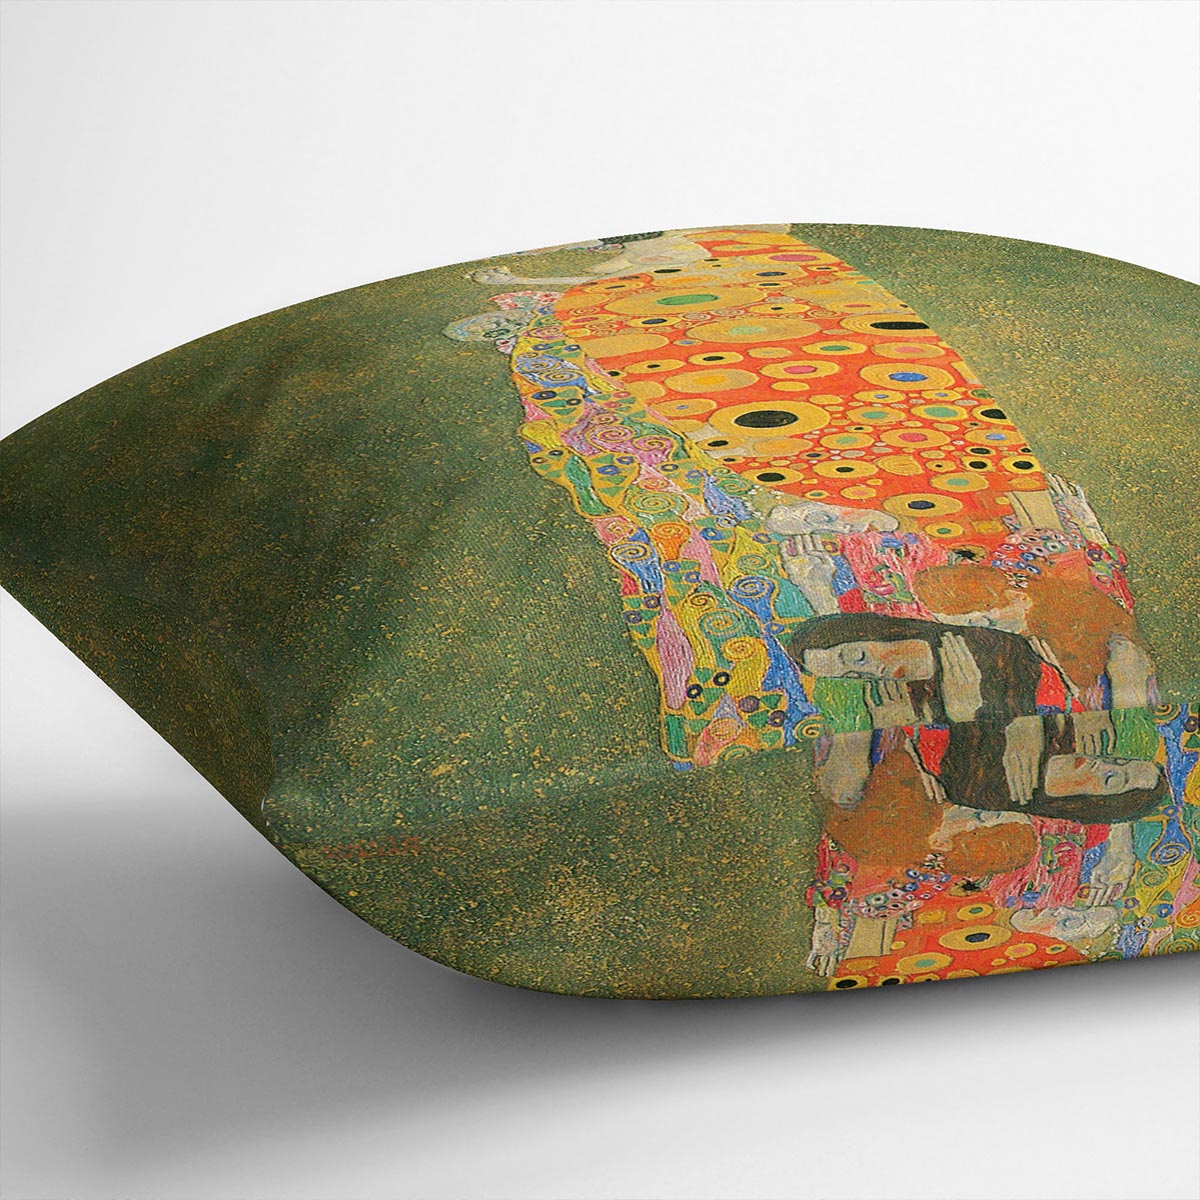 Abandoned Hope by Klimt Cushion